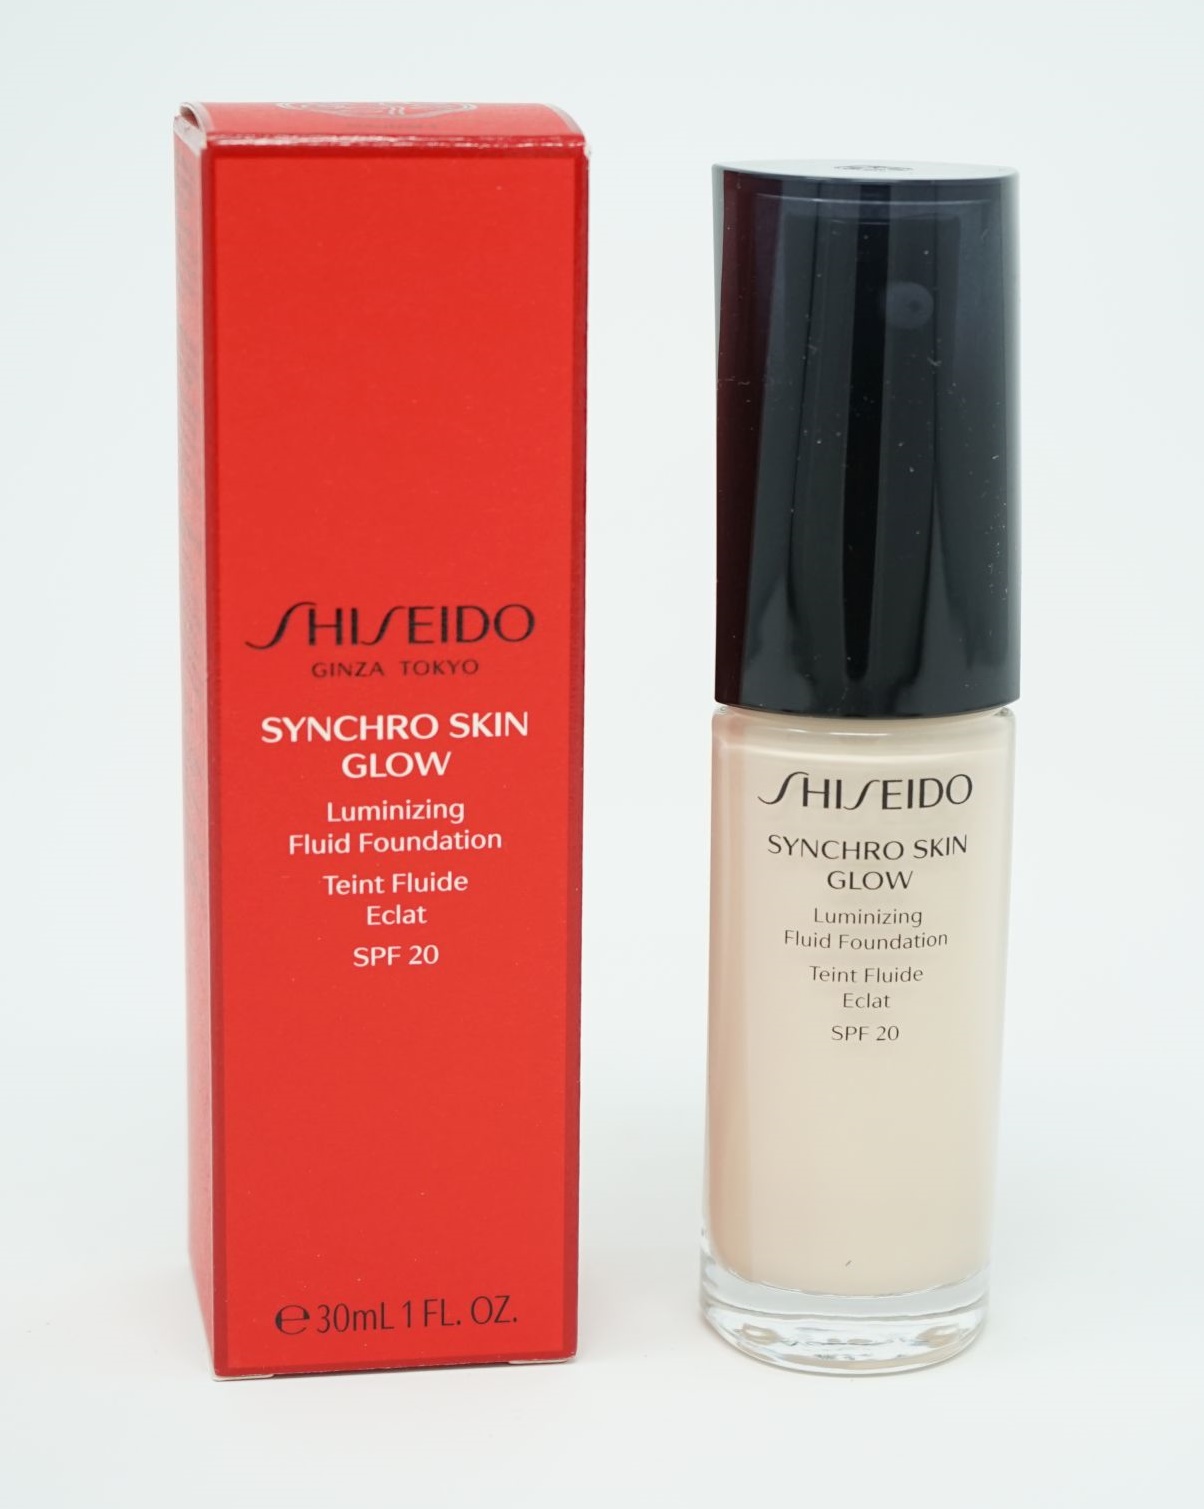 Shiseido Ginza Tokyo Sychro Skin Lasting Foundation SPF20  Neutral 1